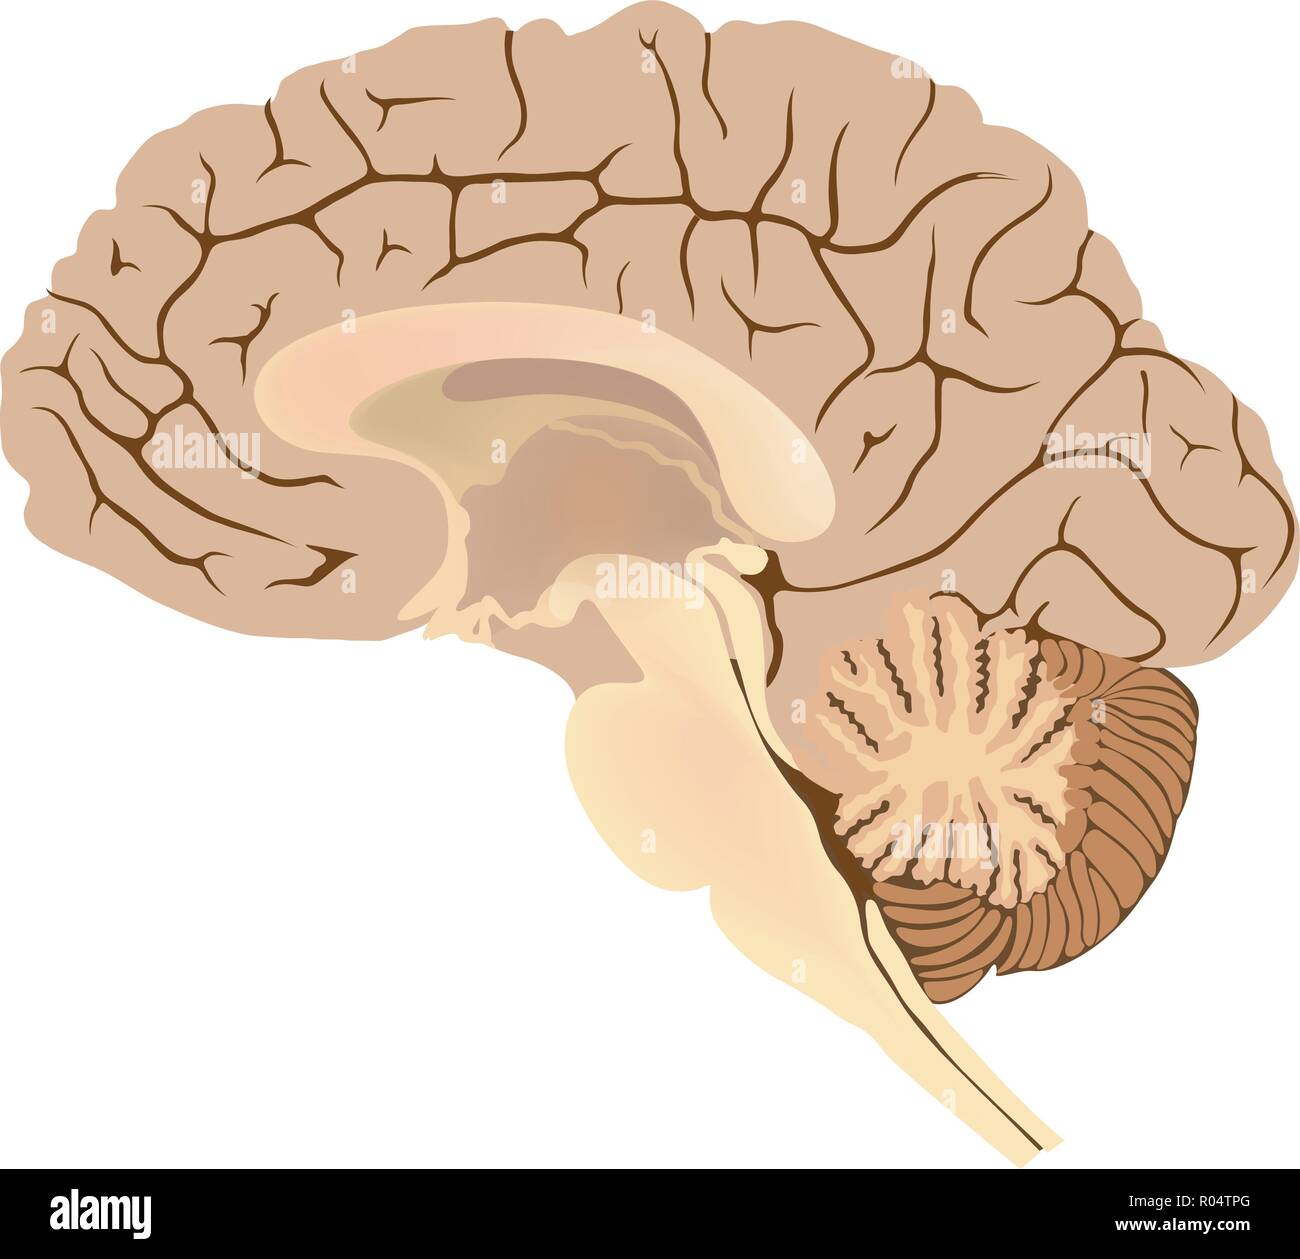 Menschliche Gehirn. Grafische Darstellung der Anatomie Körper teil. Stock Vektor